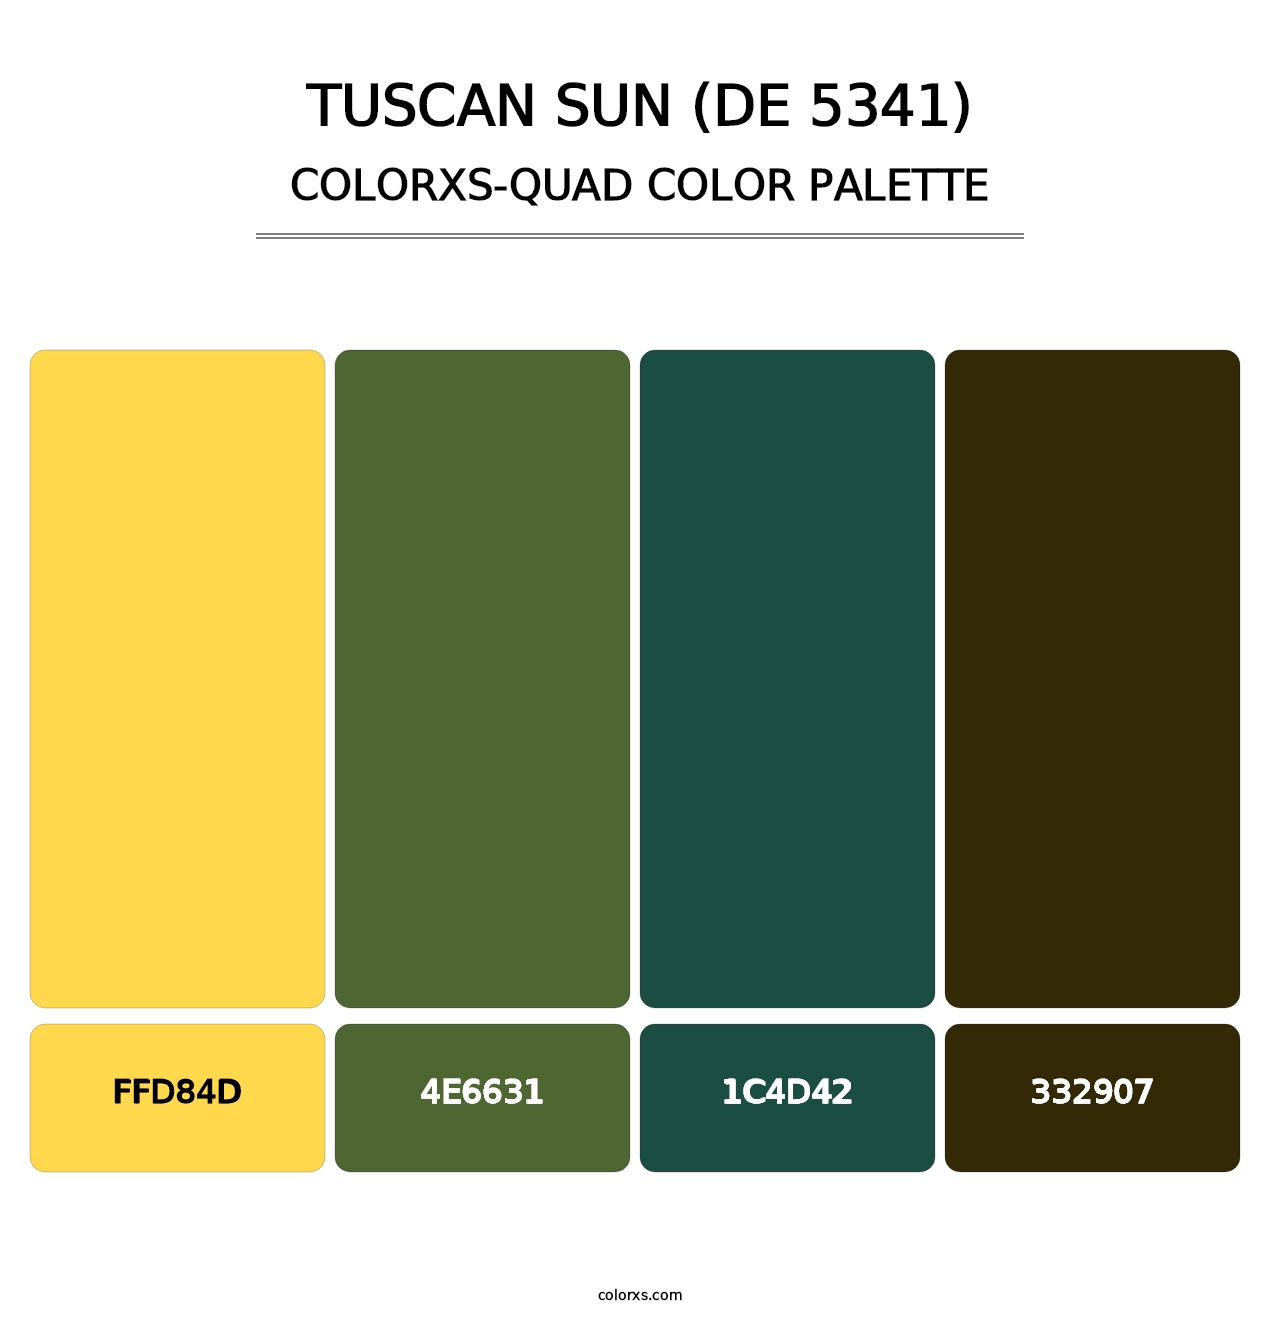 Tuscan Sun (DE 5341) - Colorxs Quad Palette